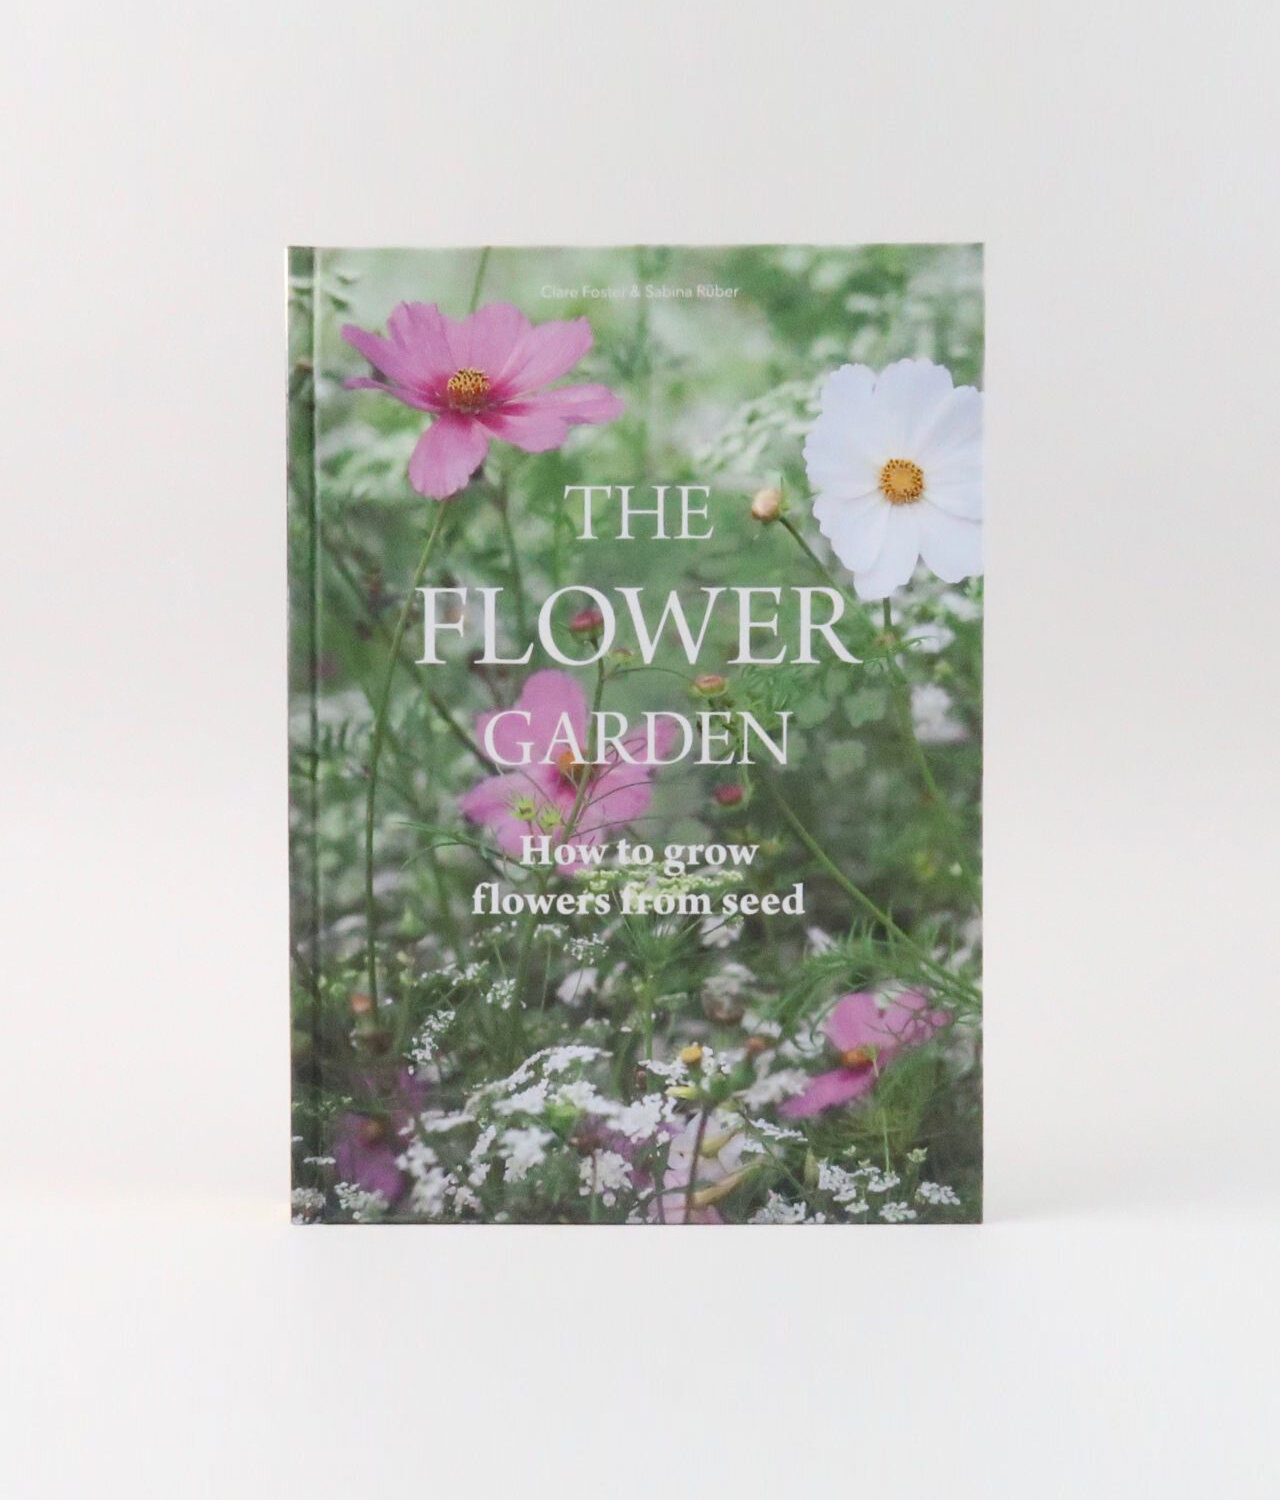 the-flower-garden-claire-foster-02-1280x1280.jpg